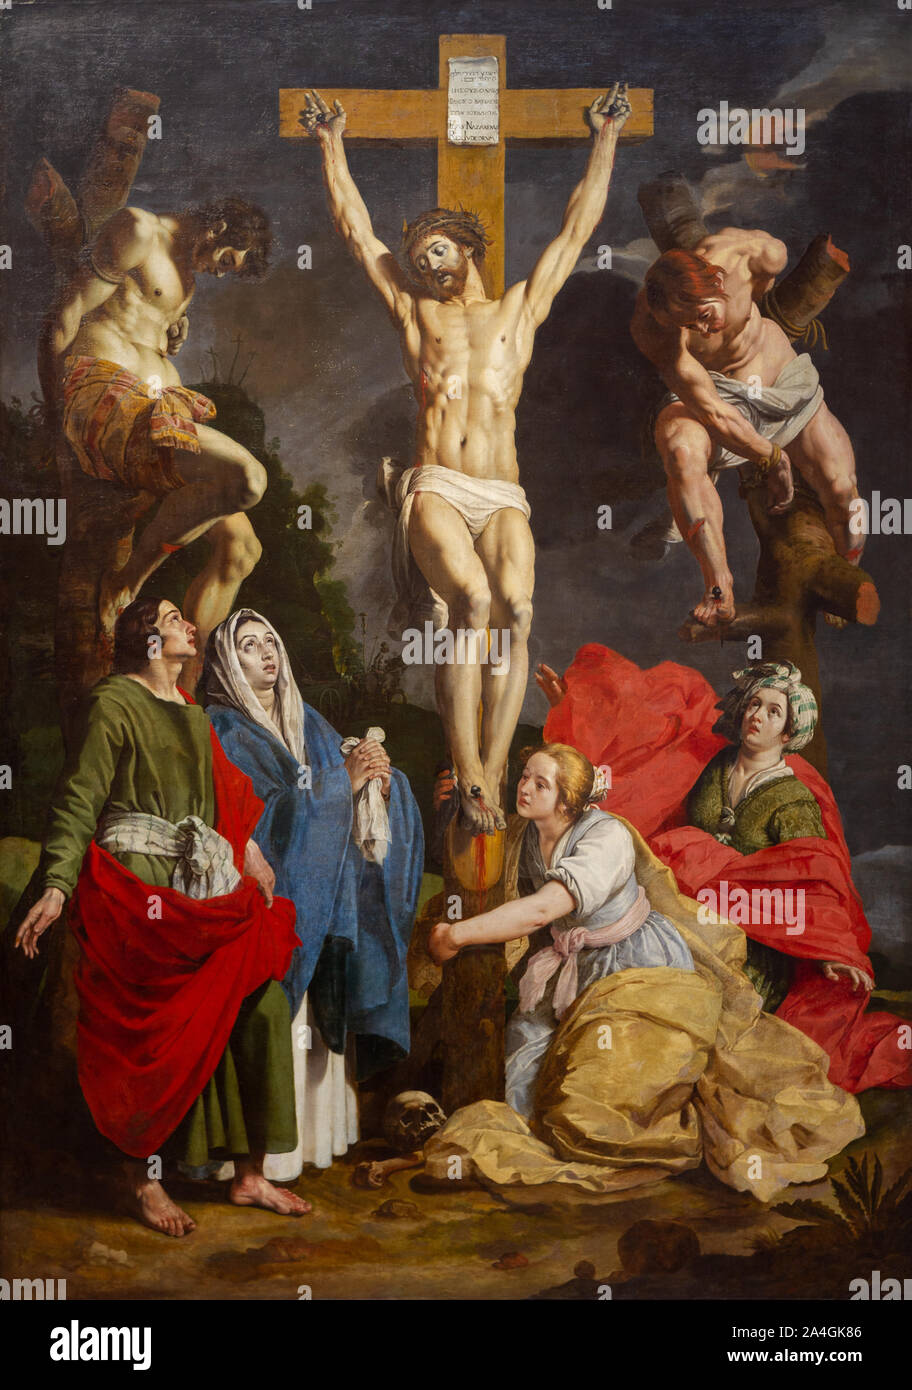 Das Bild von der Kreuzigung Jesu Christi von Abraham Janssens (1576-1632). Aus dem Dominikanerkloster in Valenciennes, Frankreich. Stockfoto